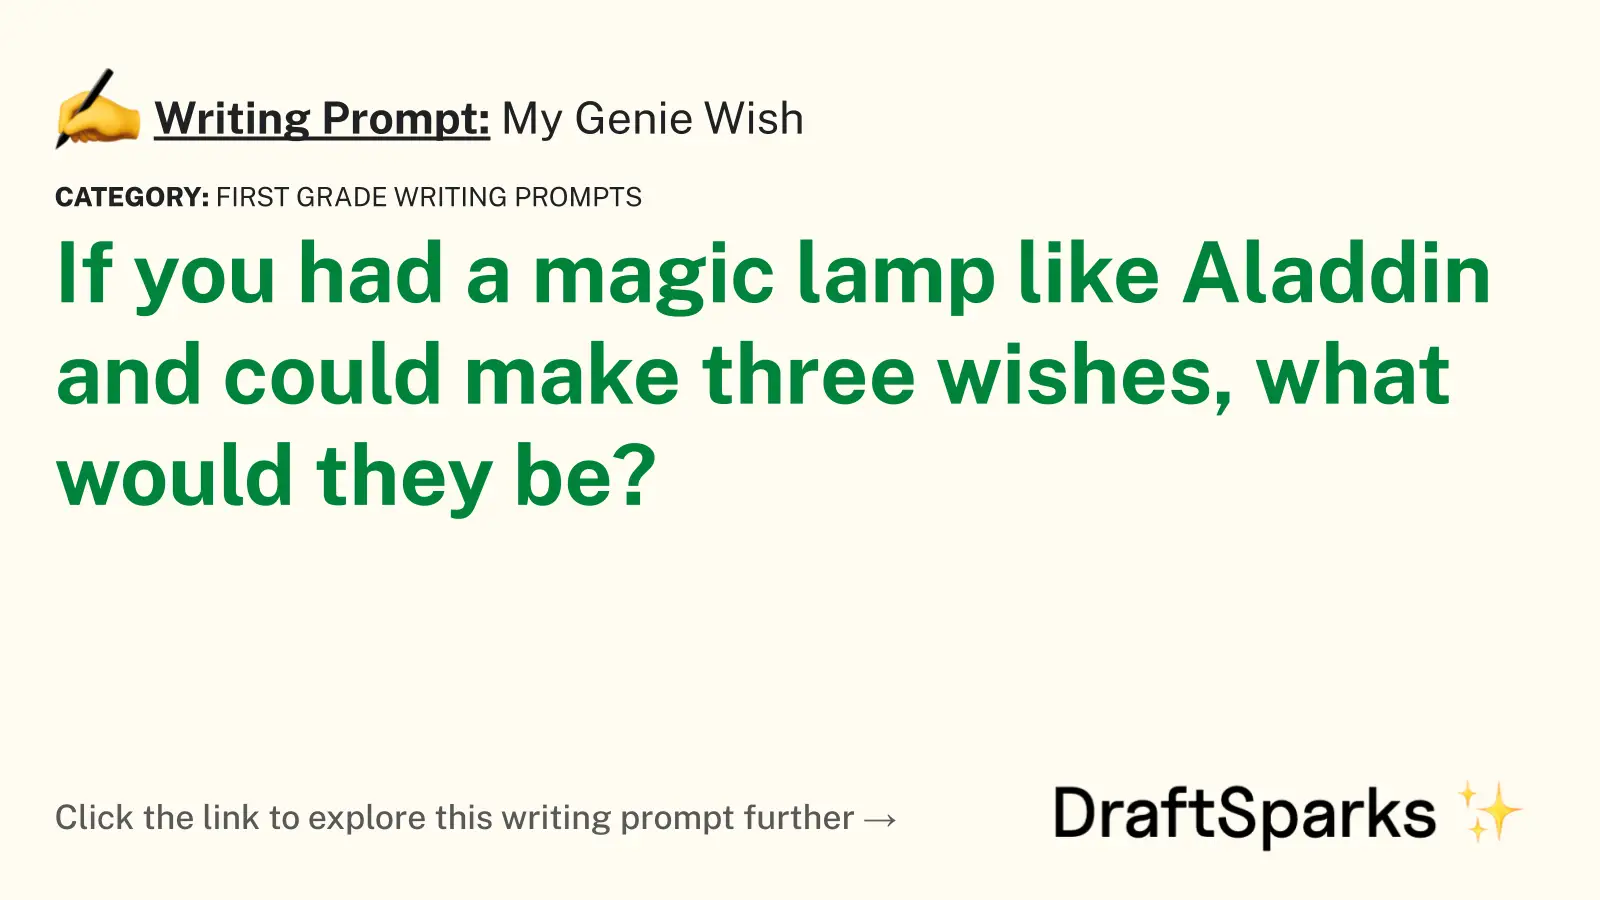 My Genie Wish